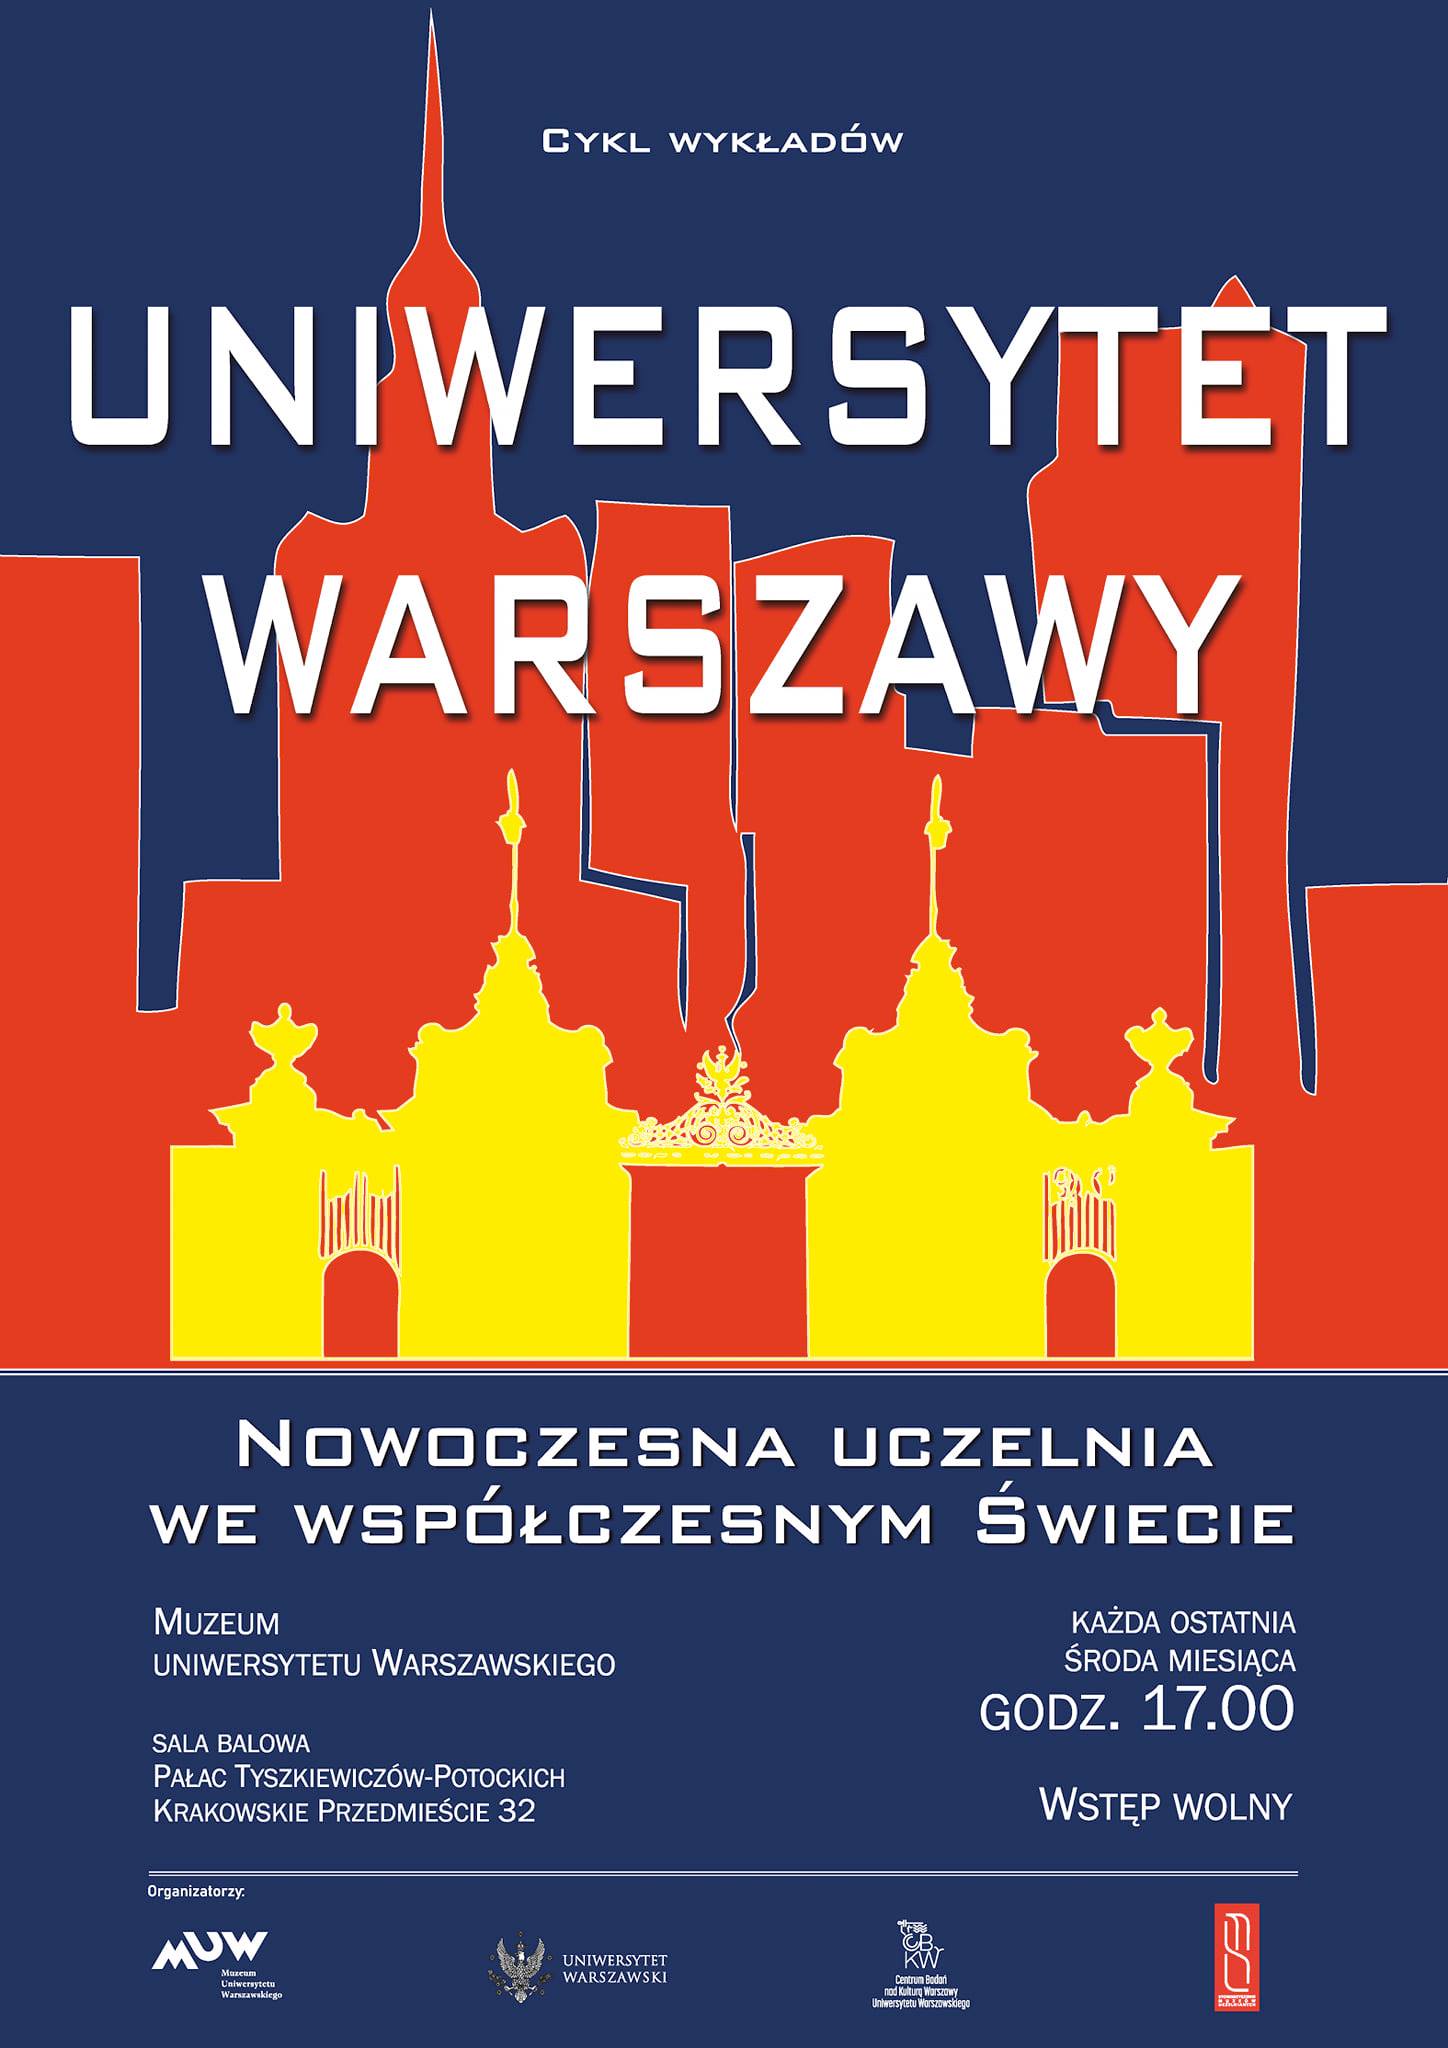 Uiwersytet Warszawy. Nowoczesna uczelnia we współczesnym świecie